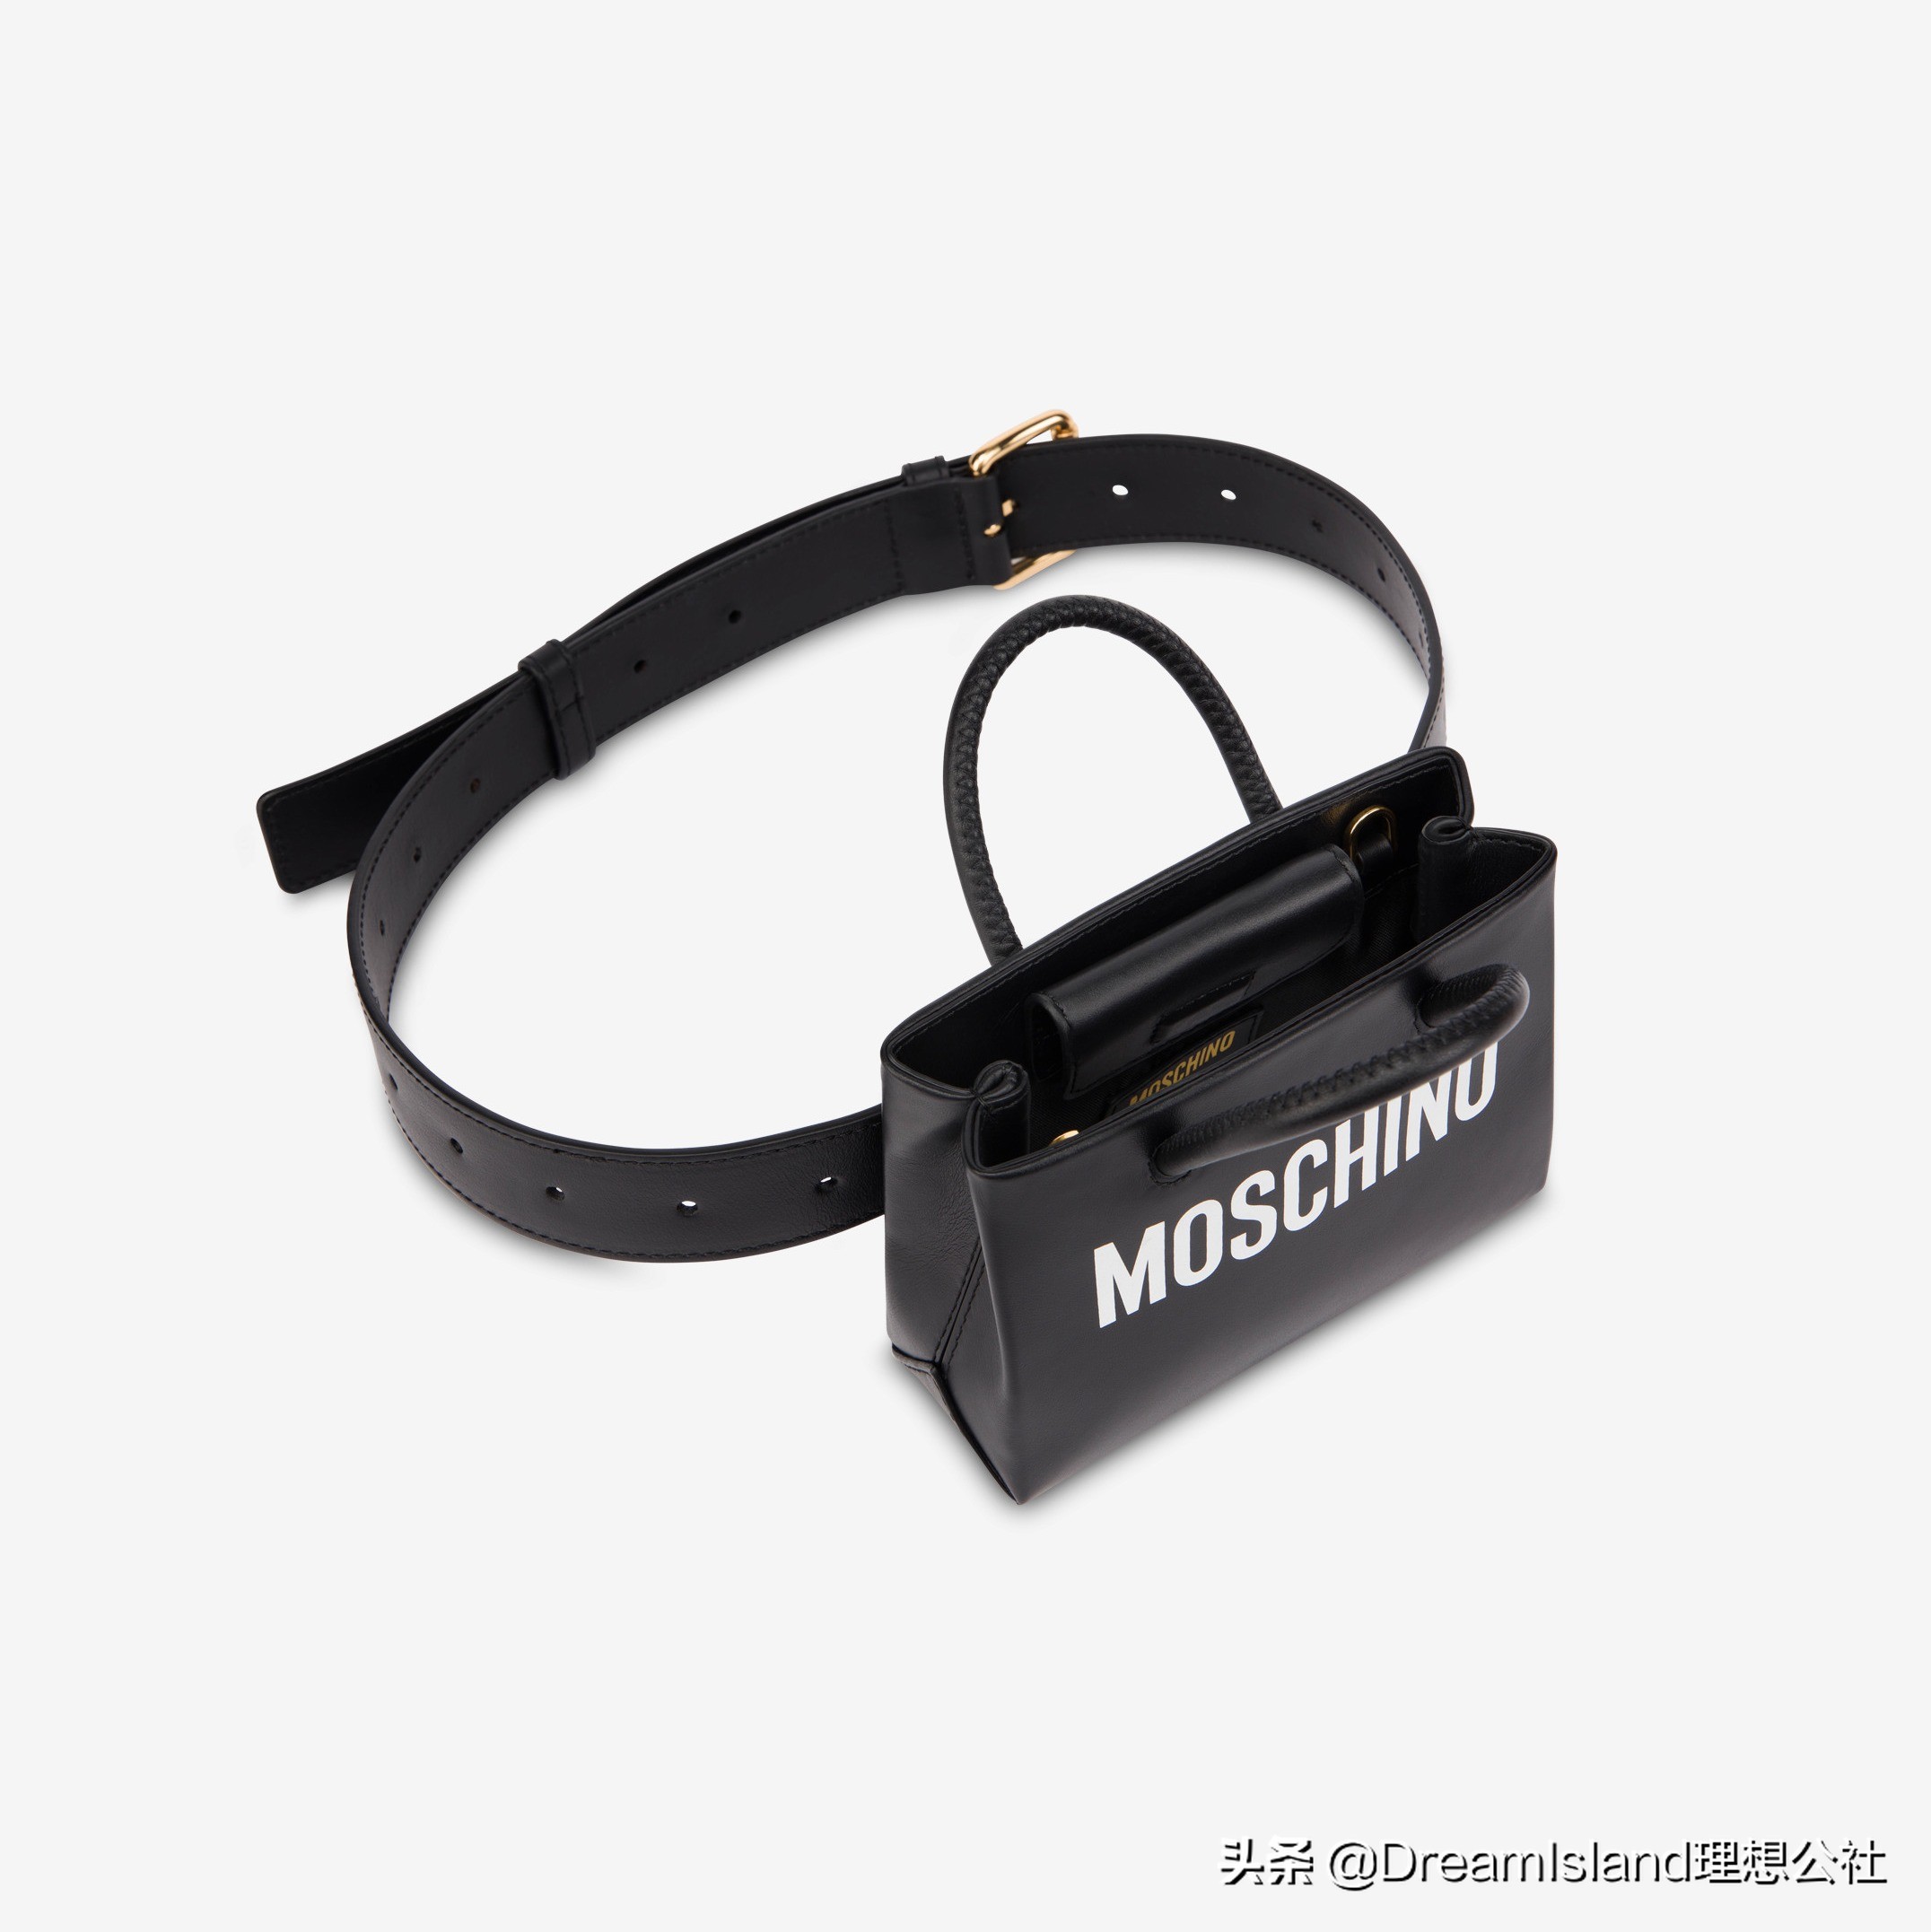 新包 | Moschino 上架2020早秋新包 超大号机车包收音机造型手袋